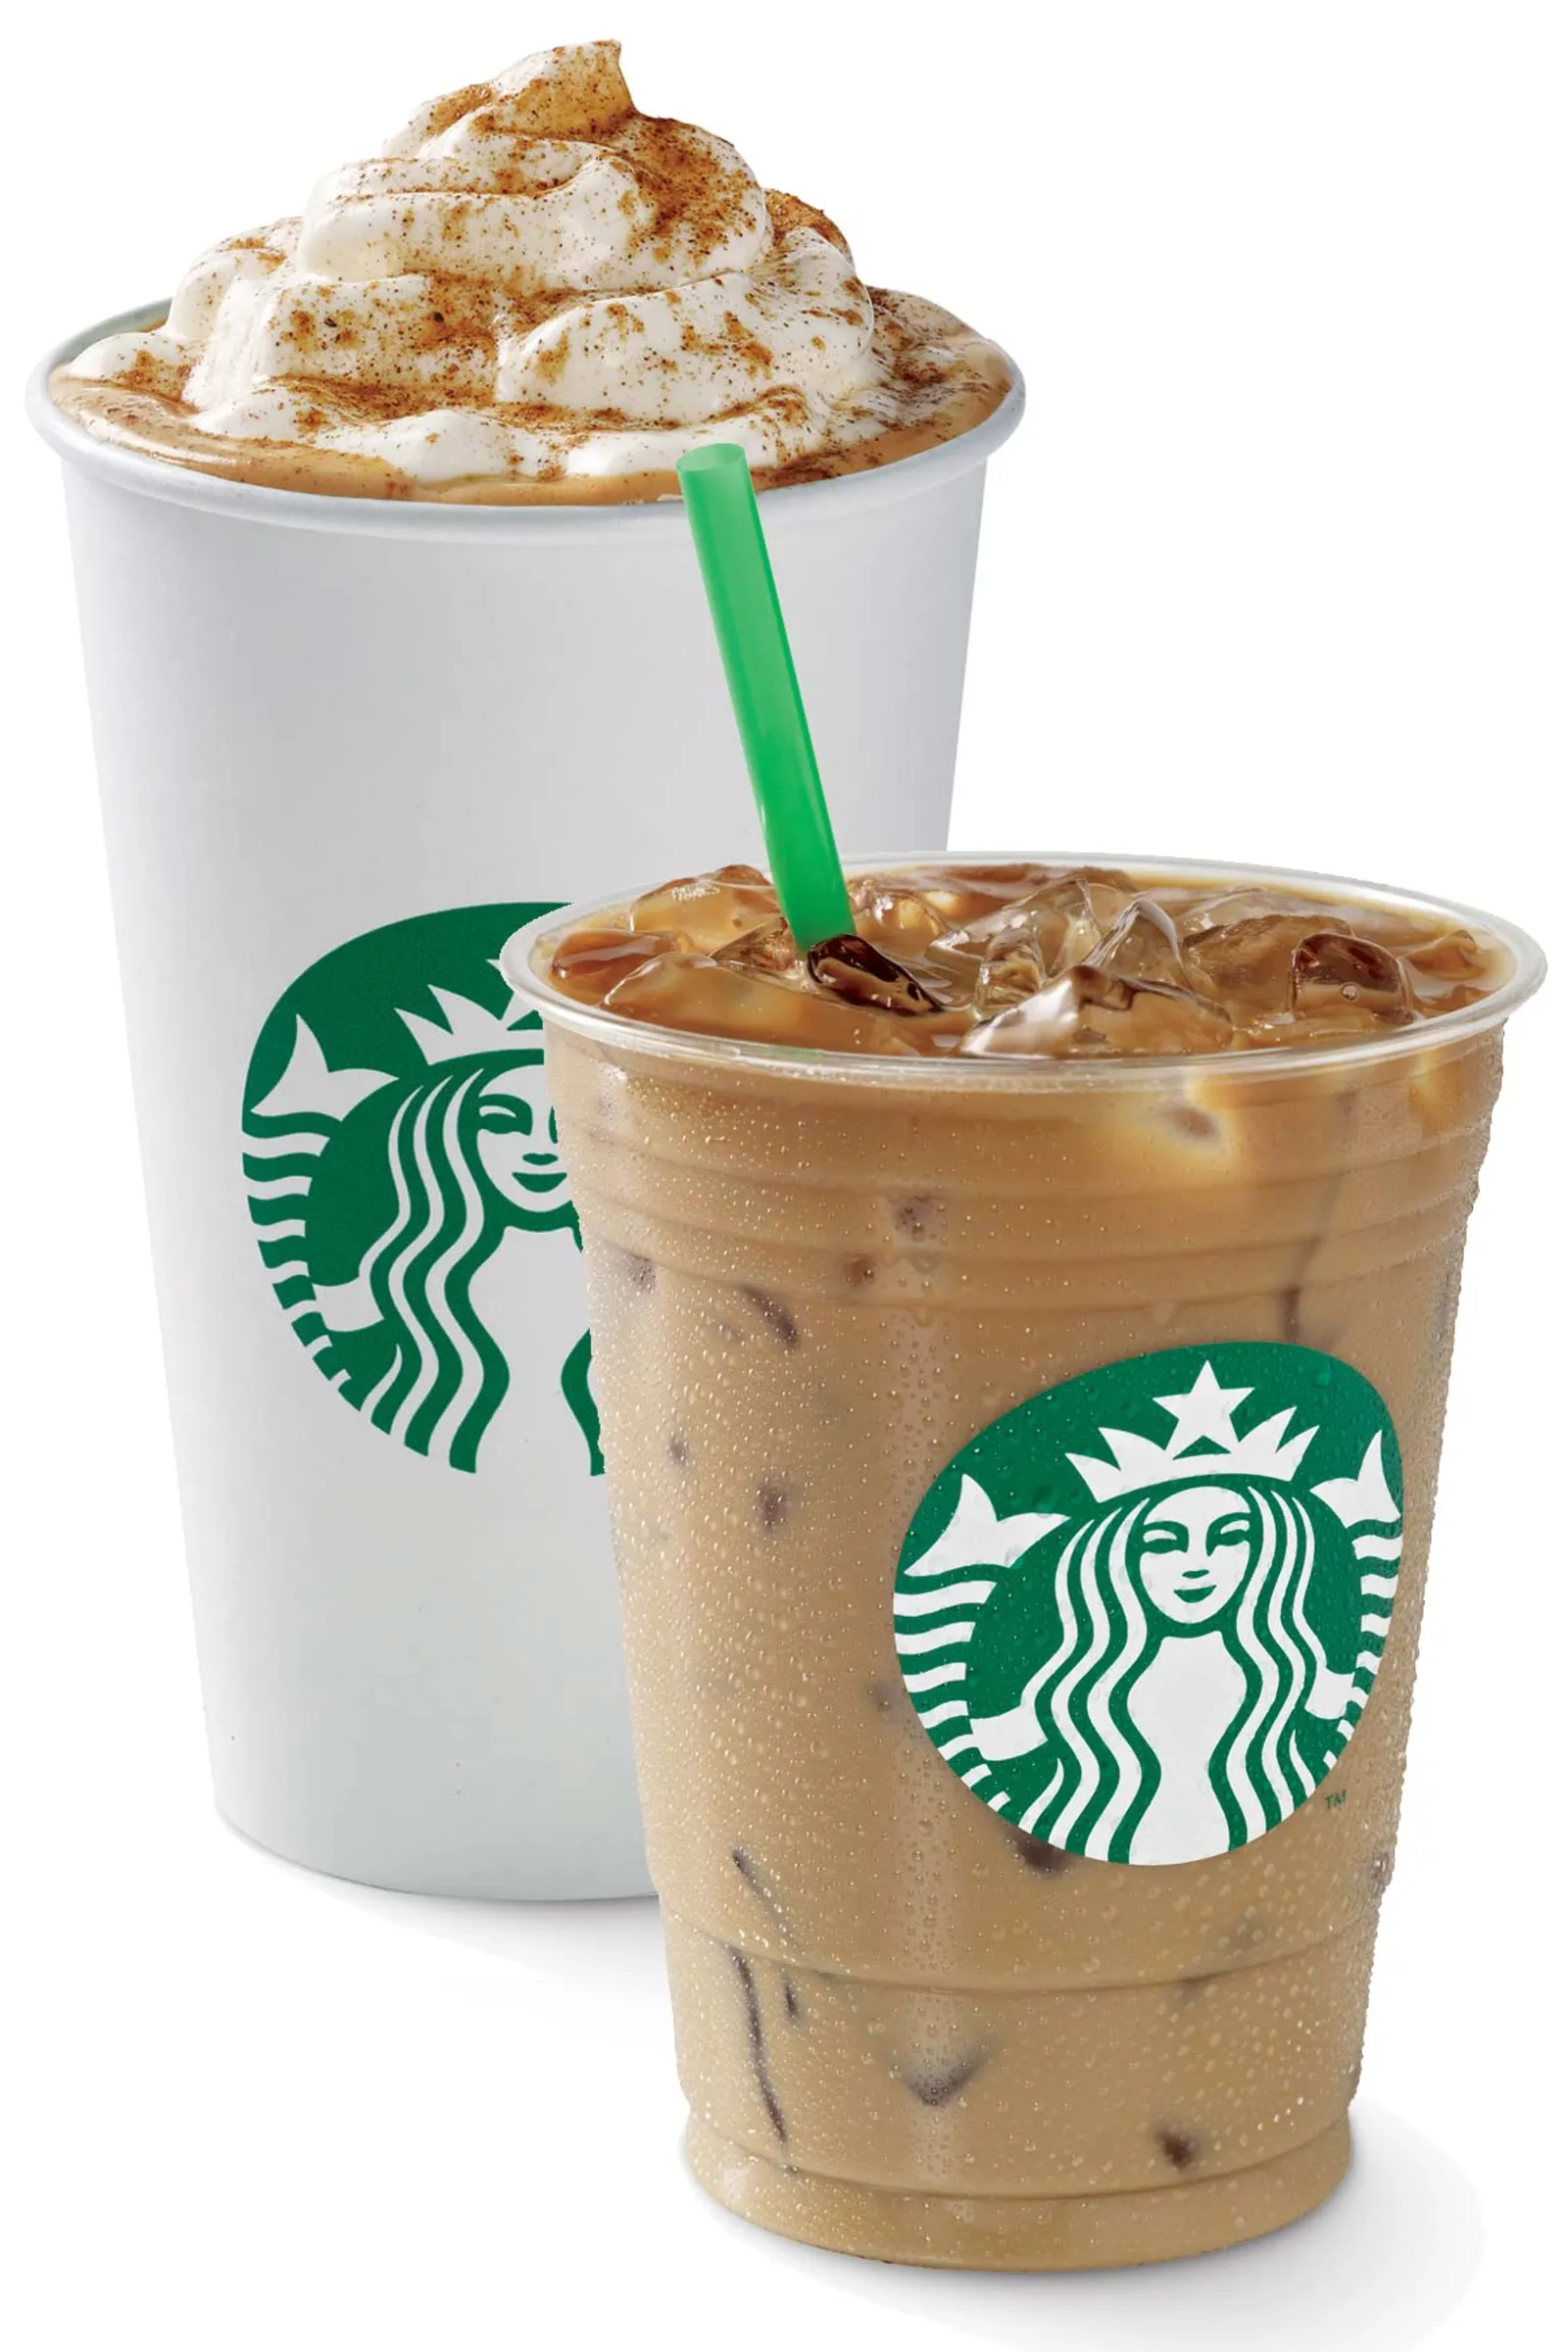 Rekomendasi Barista, Ini 7 Daftar Menu Starbucks yang Wajib Dicoba